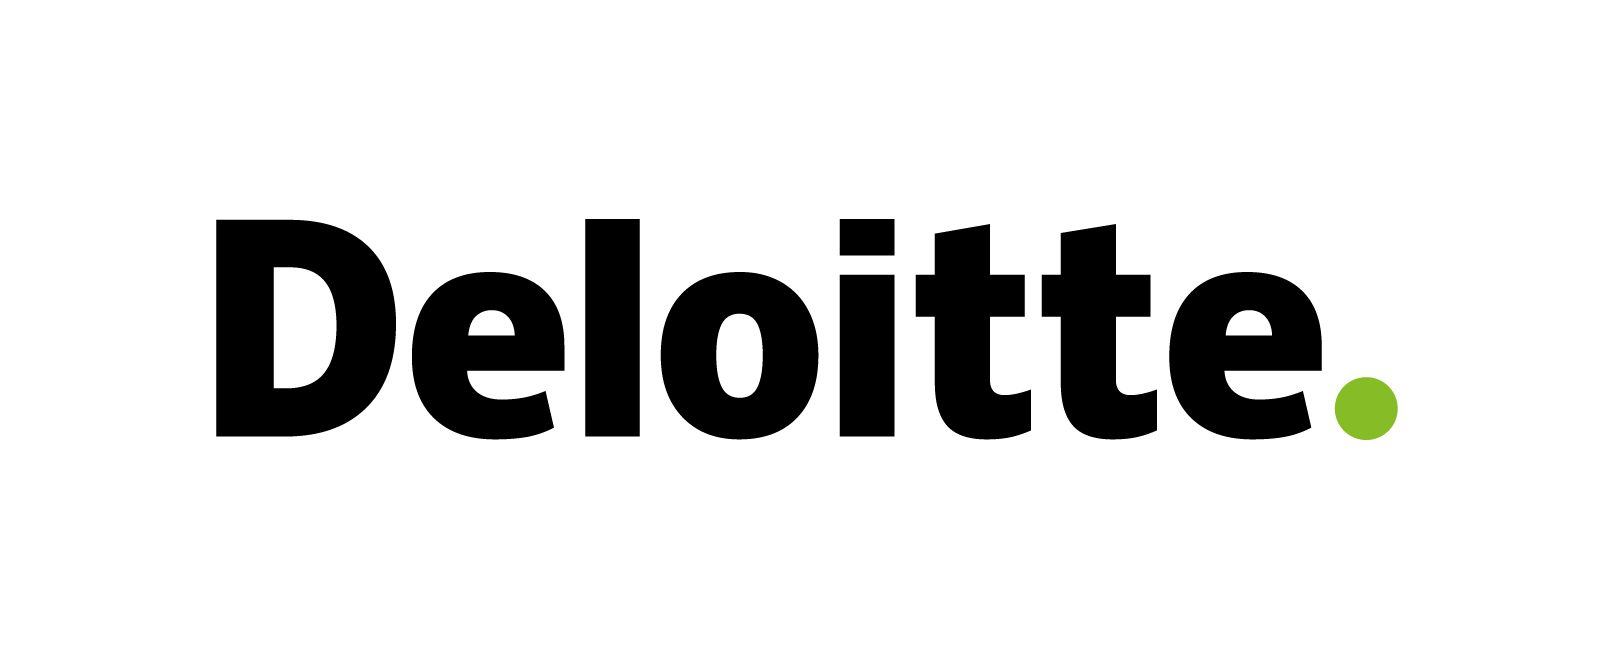 Deloitte Services Wirtschaftsprüfungs GmbH